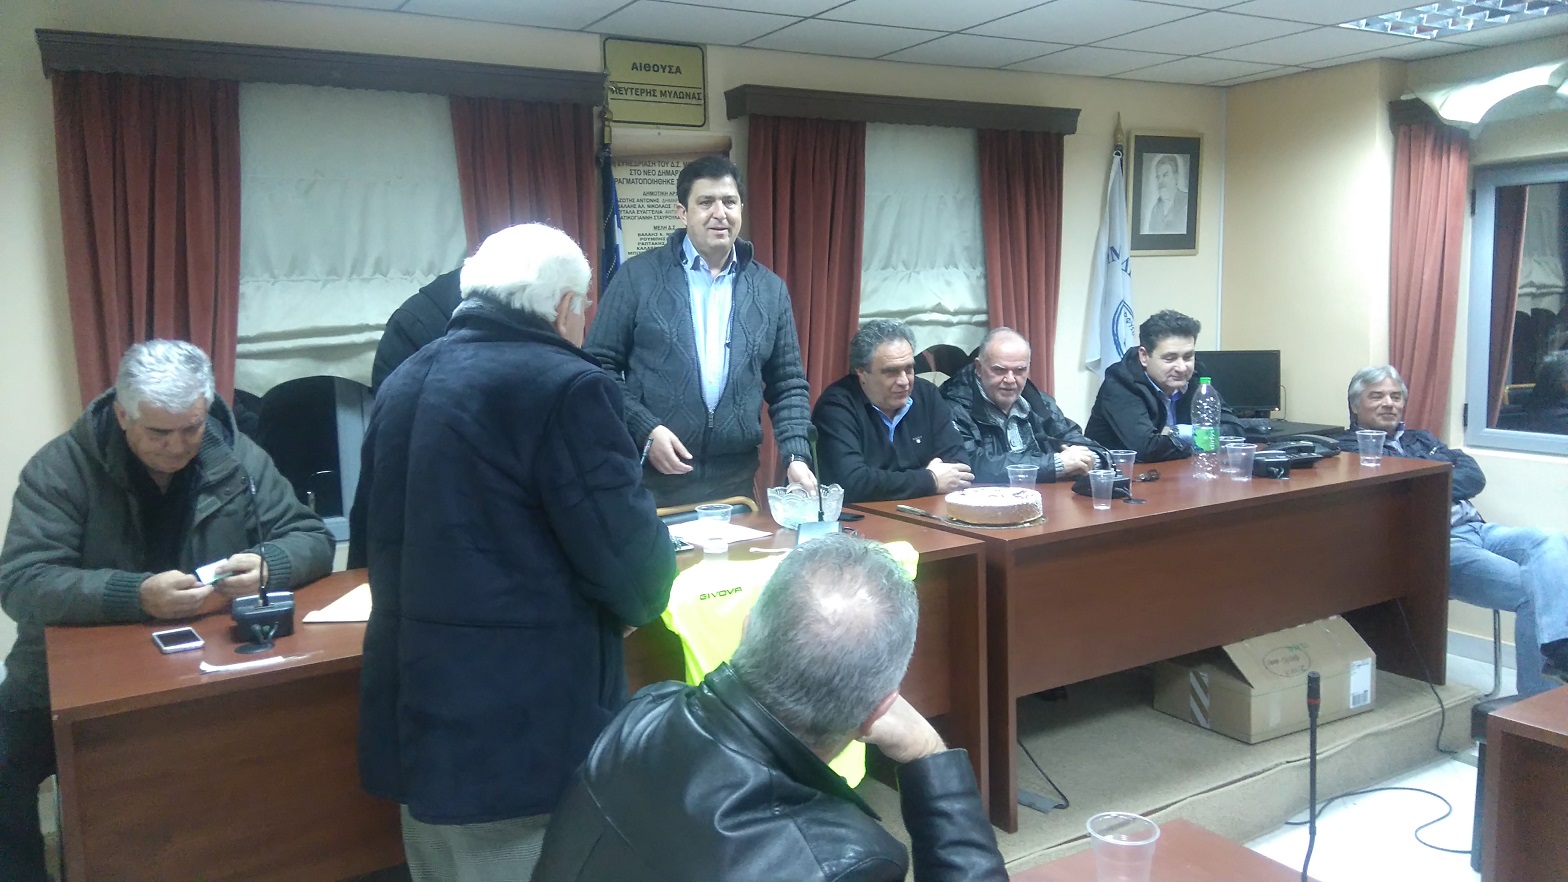 Εκδήλωση κοπής πίτας  σωματείων Δήμου Διρφύων Μεσσαπίων DSC 1223